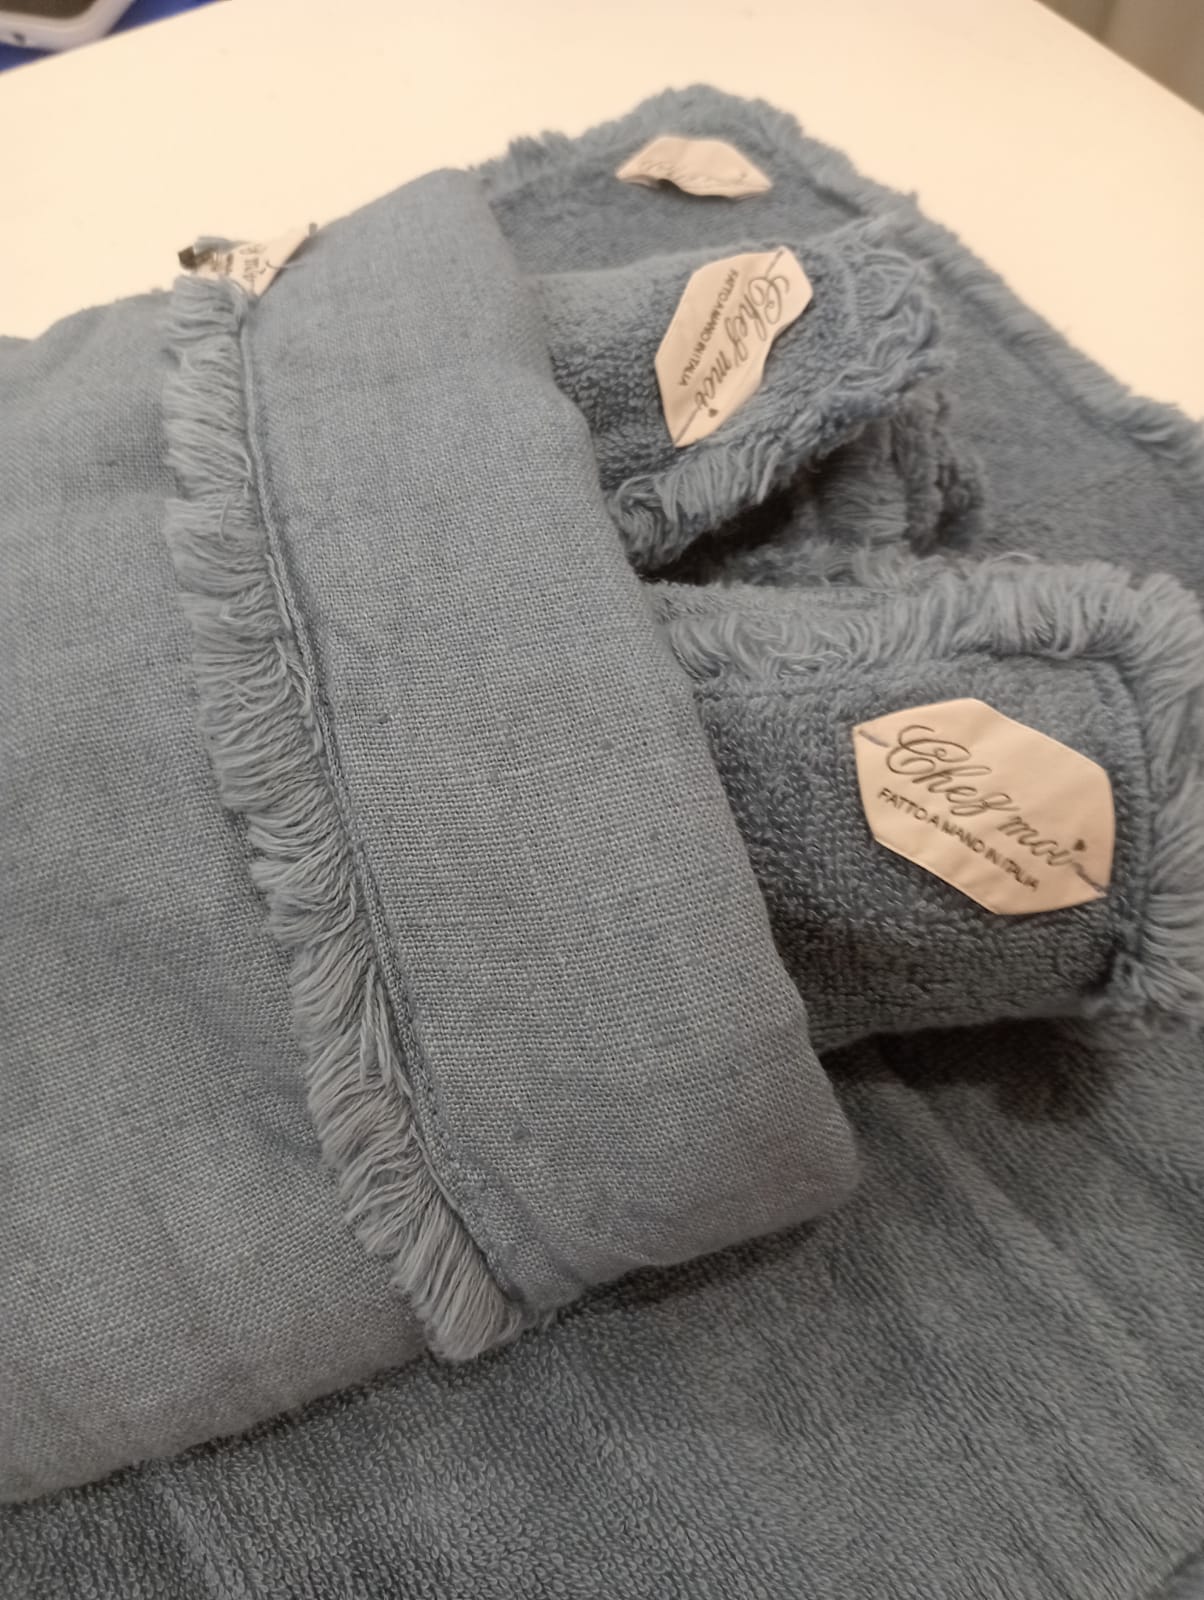 Lavette set da 3 asciugamani bagno con elegante sacchetto di lino, colore: Fiordaliso, tessuti pregiati, 100% Made in Italy - Chez Moi